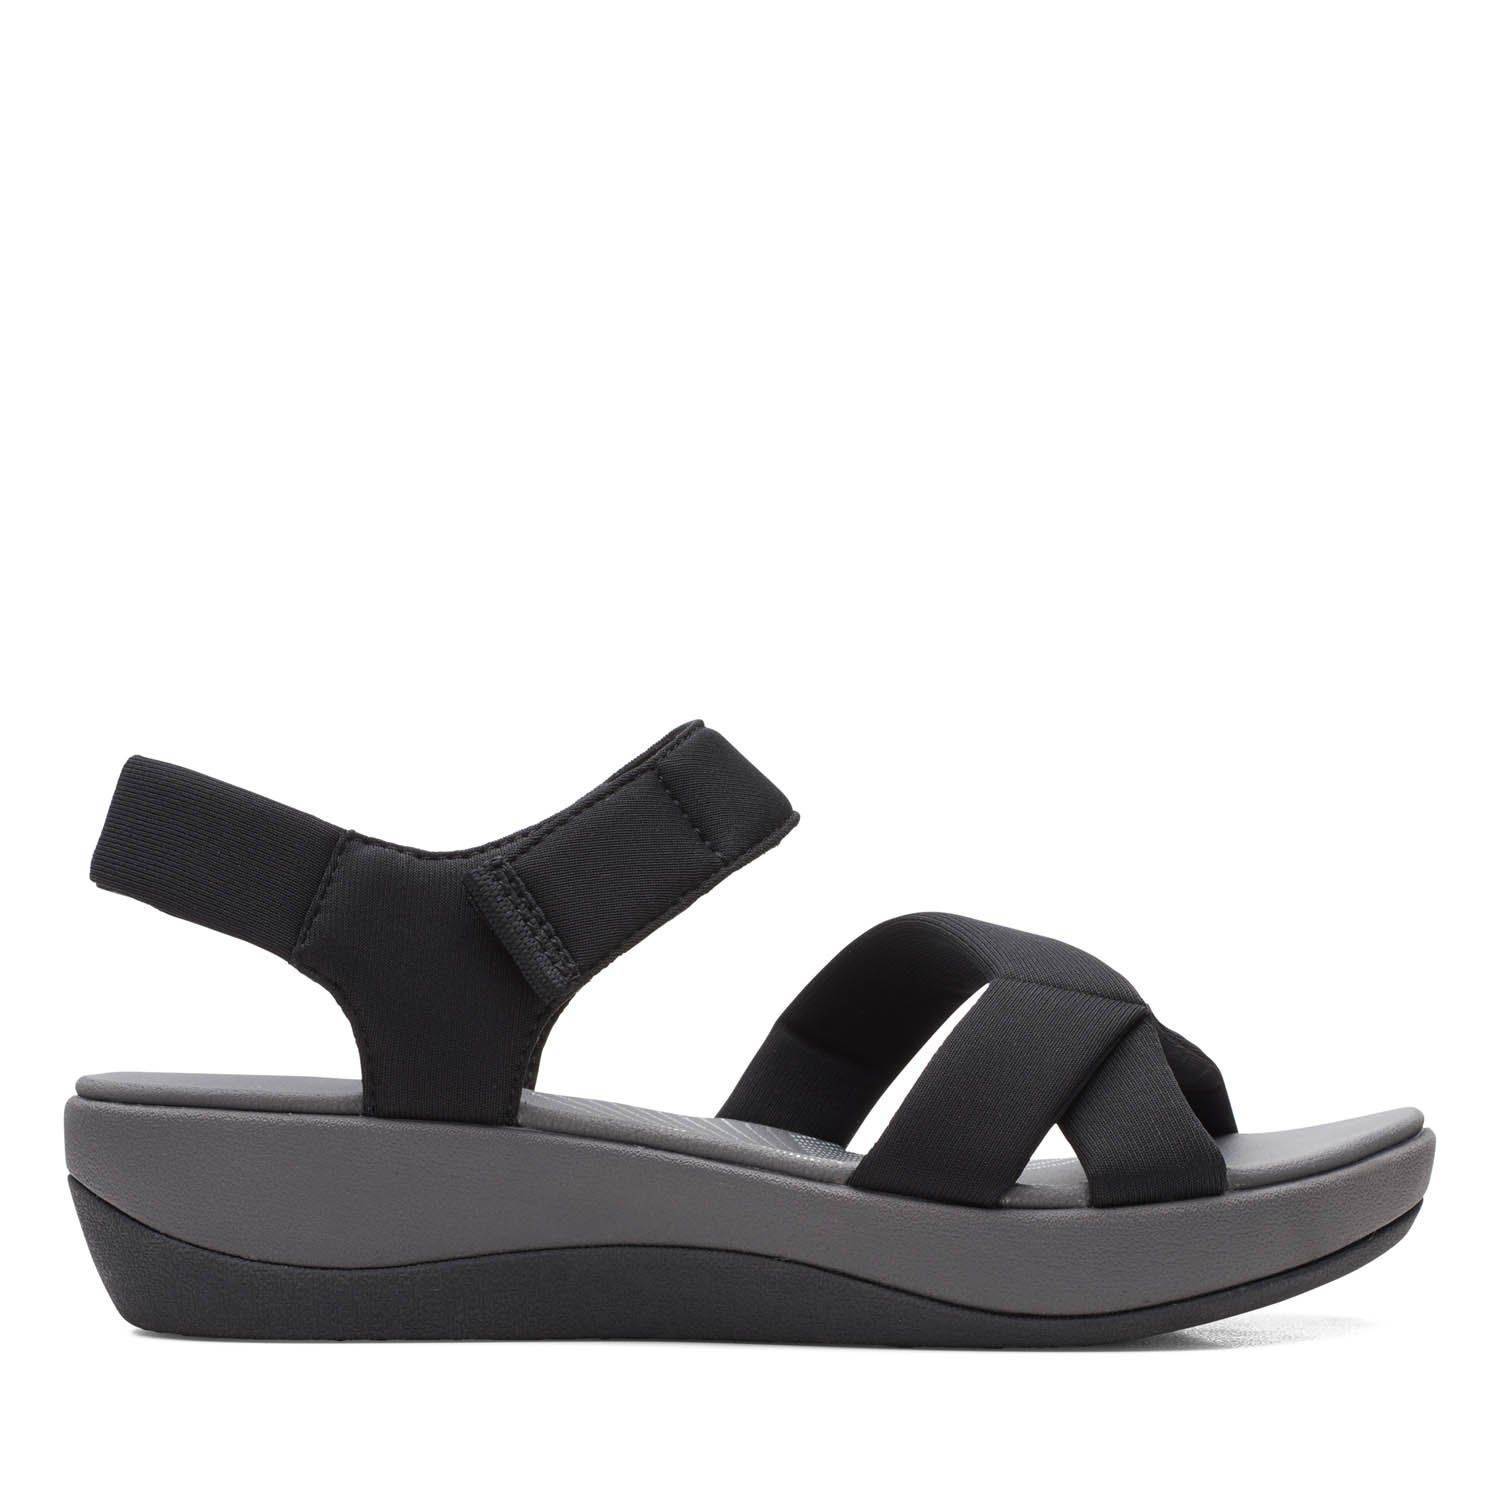 Женские сандалии Clarks (Arla Gracie 26159148), черные, цвет черный, размер 37.5 - фото 6